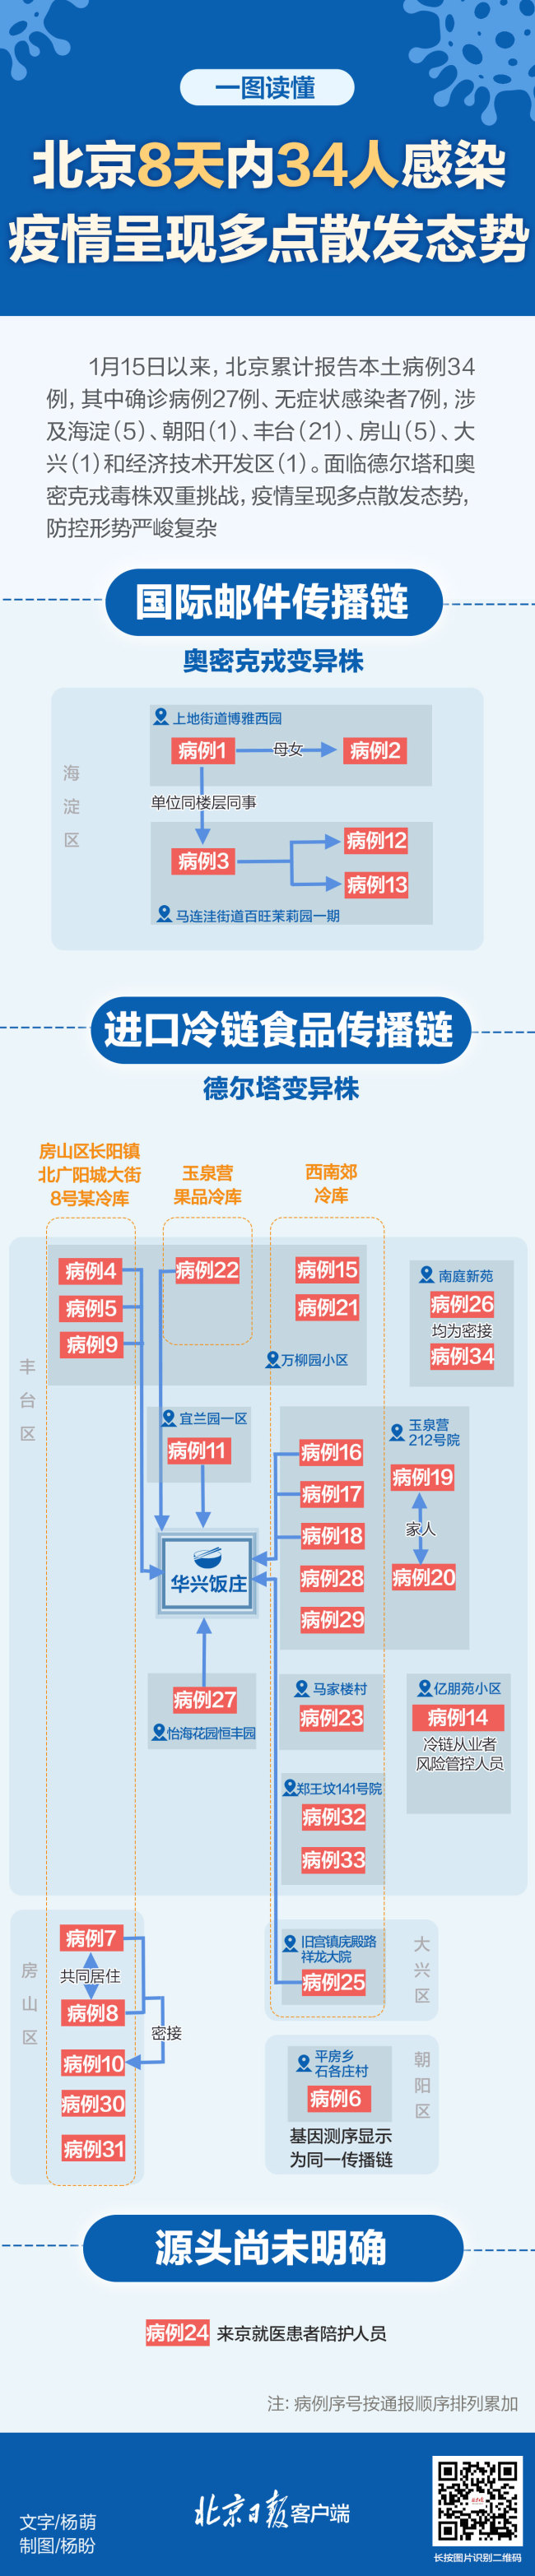 北京自1月15日以來新增34例感染者 病例關係速覽